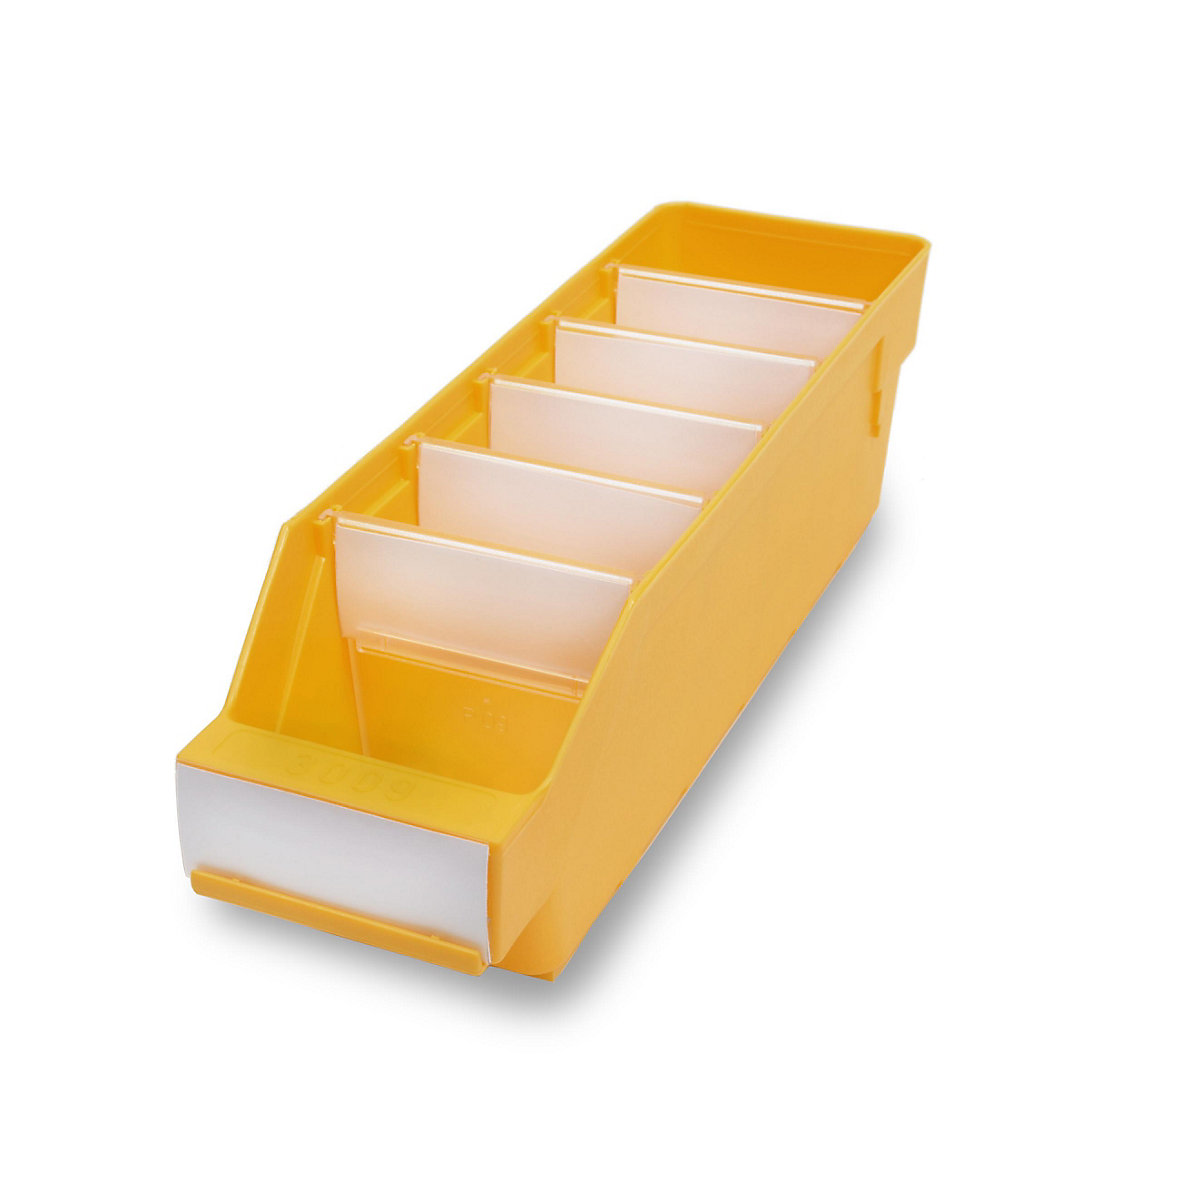 STEMO Regalkasten aus hochschlagfestem Polypropylen, gelb, LxBxH 300 x 90 x 95 mm, VE 40 Stk